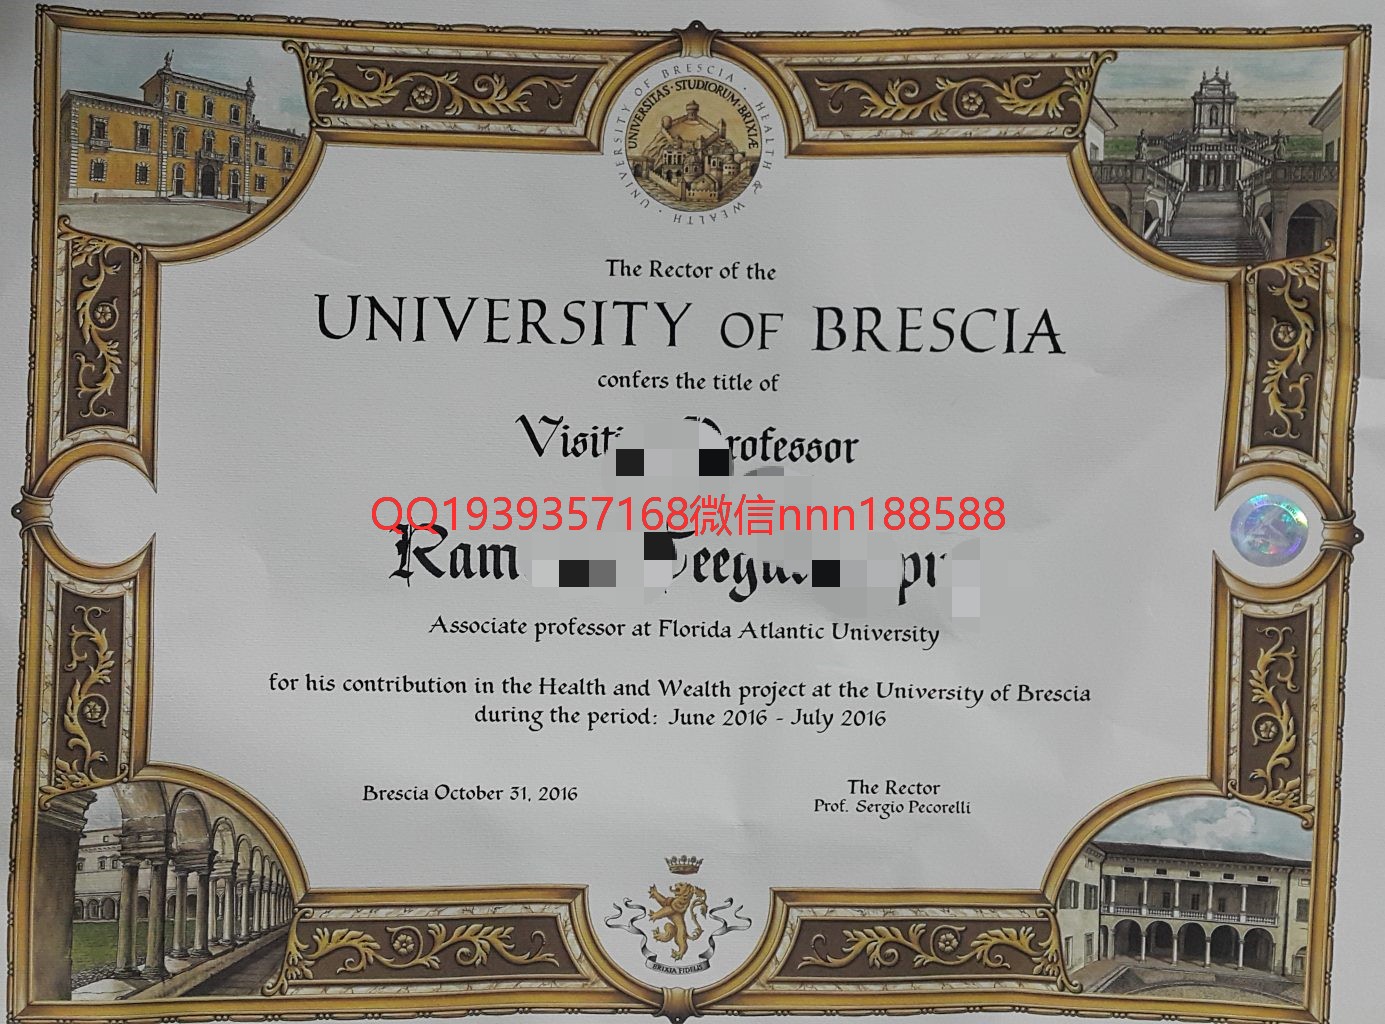 意大利布雷西亚大学 University of brescia